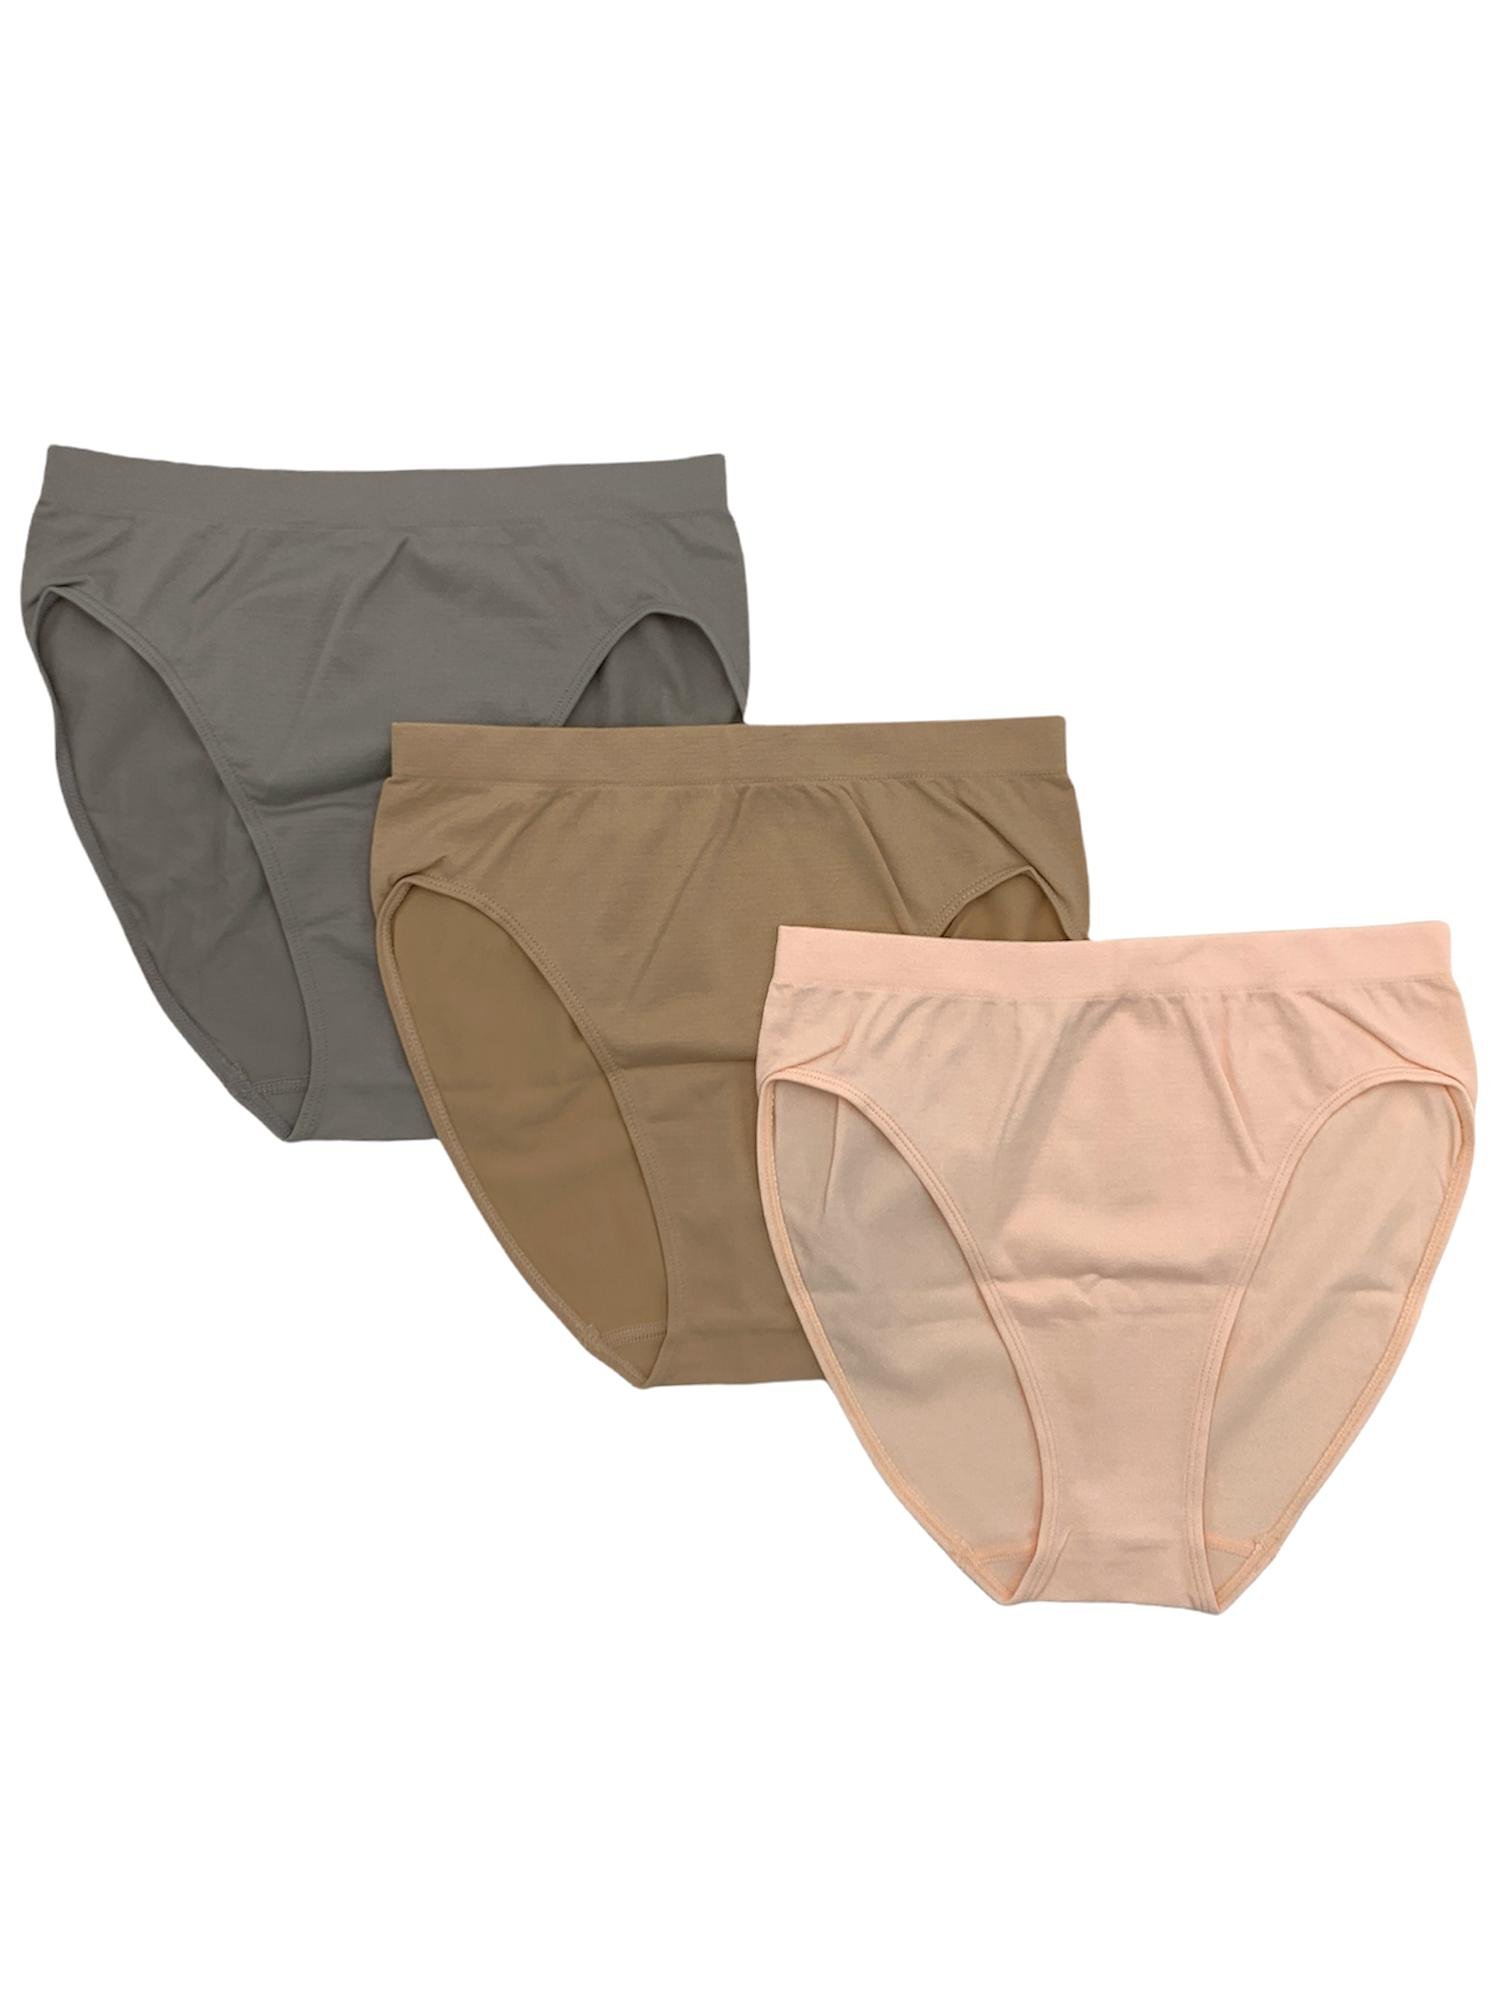 Rhonda Shear Panties 3 Pack Original Ahh Panty Black / Nude Women's Si -  beyond exchange